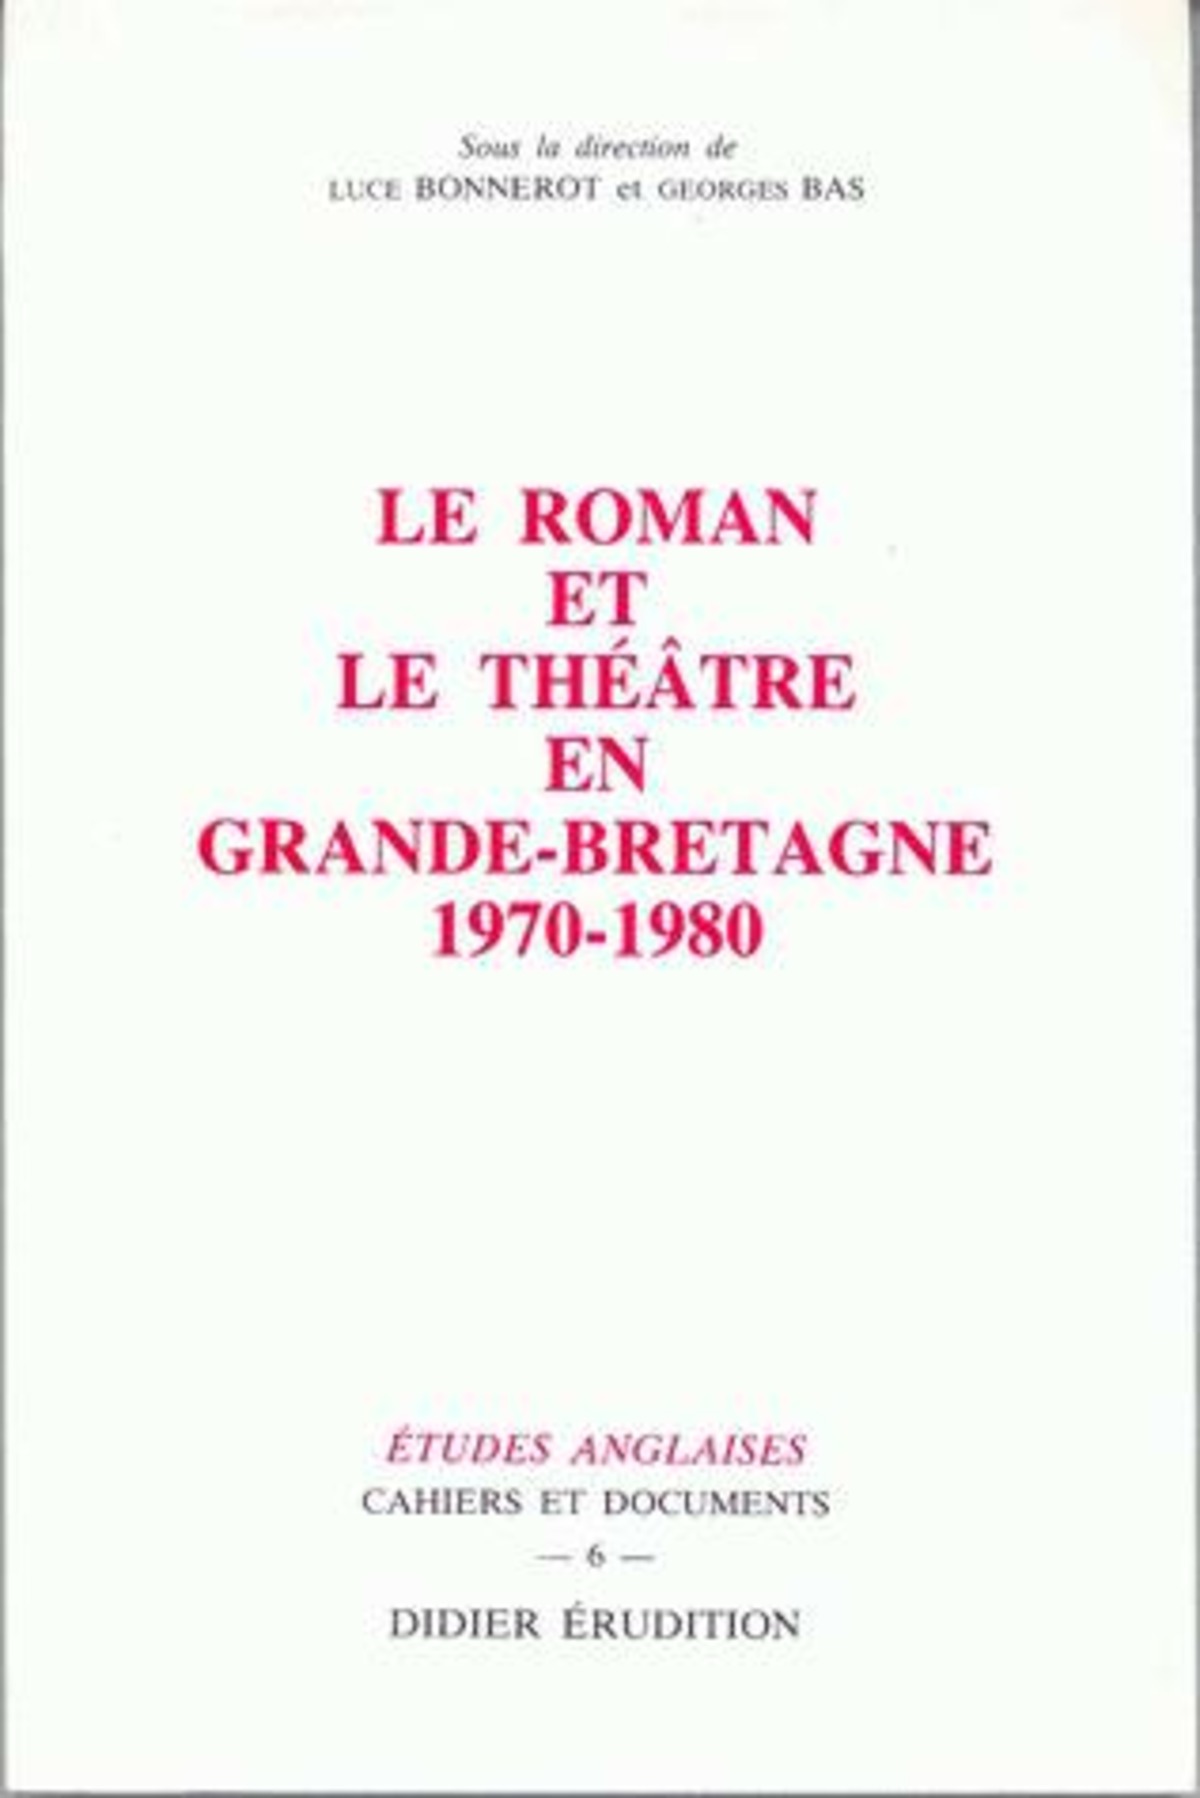 Le Roman et le théâtre en Grande-Bretagne (1970-1980)